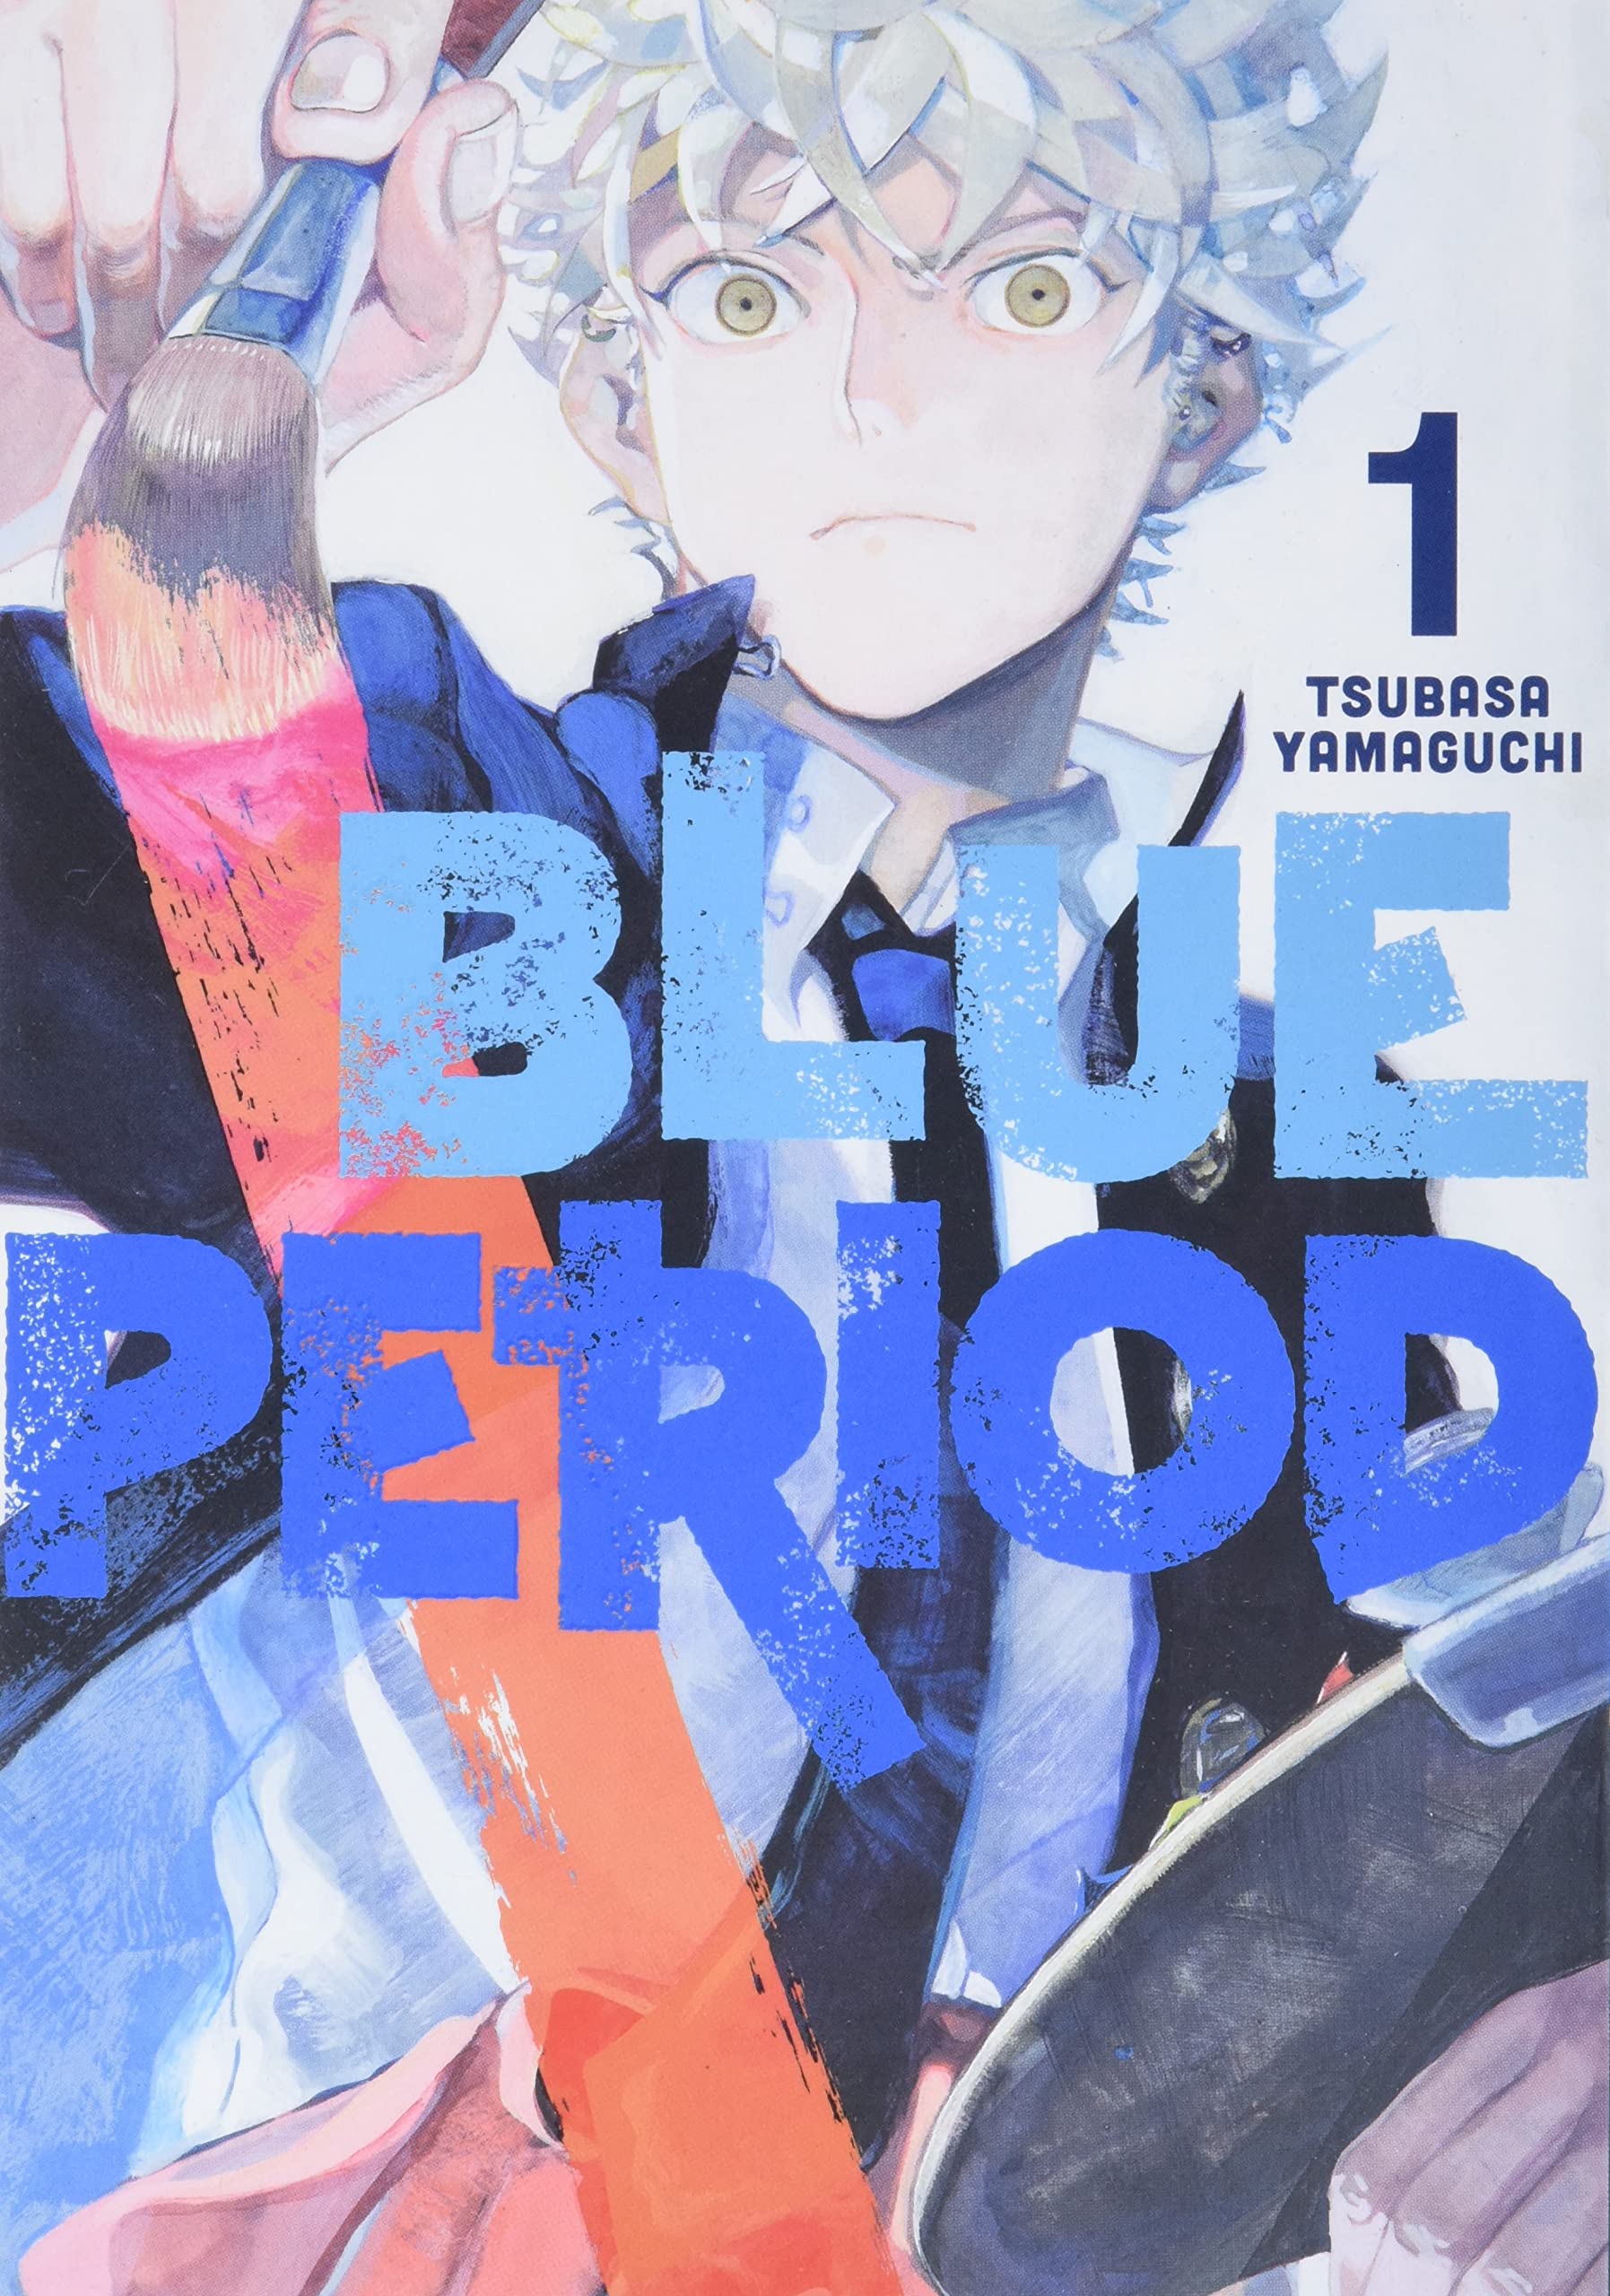 Tập 6 Blue Period: Yatora cần nhiều kinh nghiệm hơn trên con đường nghệ sĩ  - Kodoani - Kênh thông tin anime - manga - game văn hóa Nhật Bản